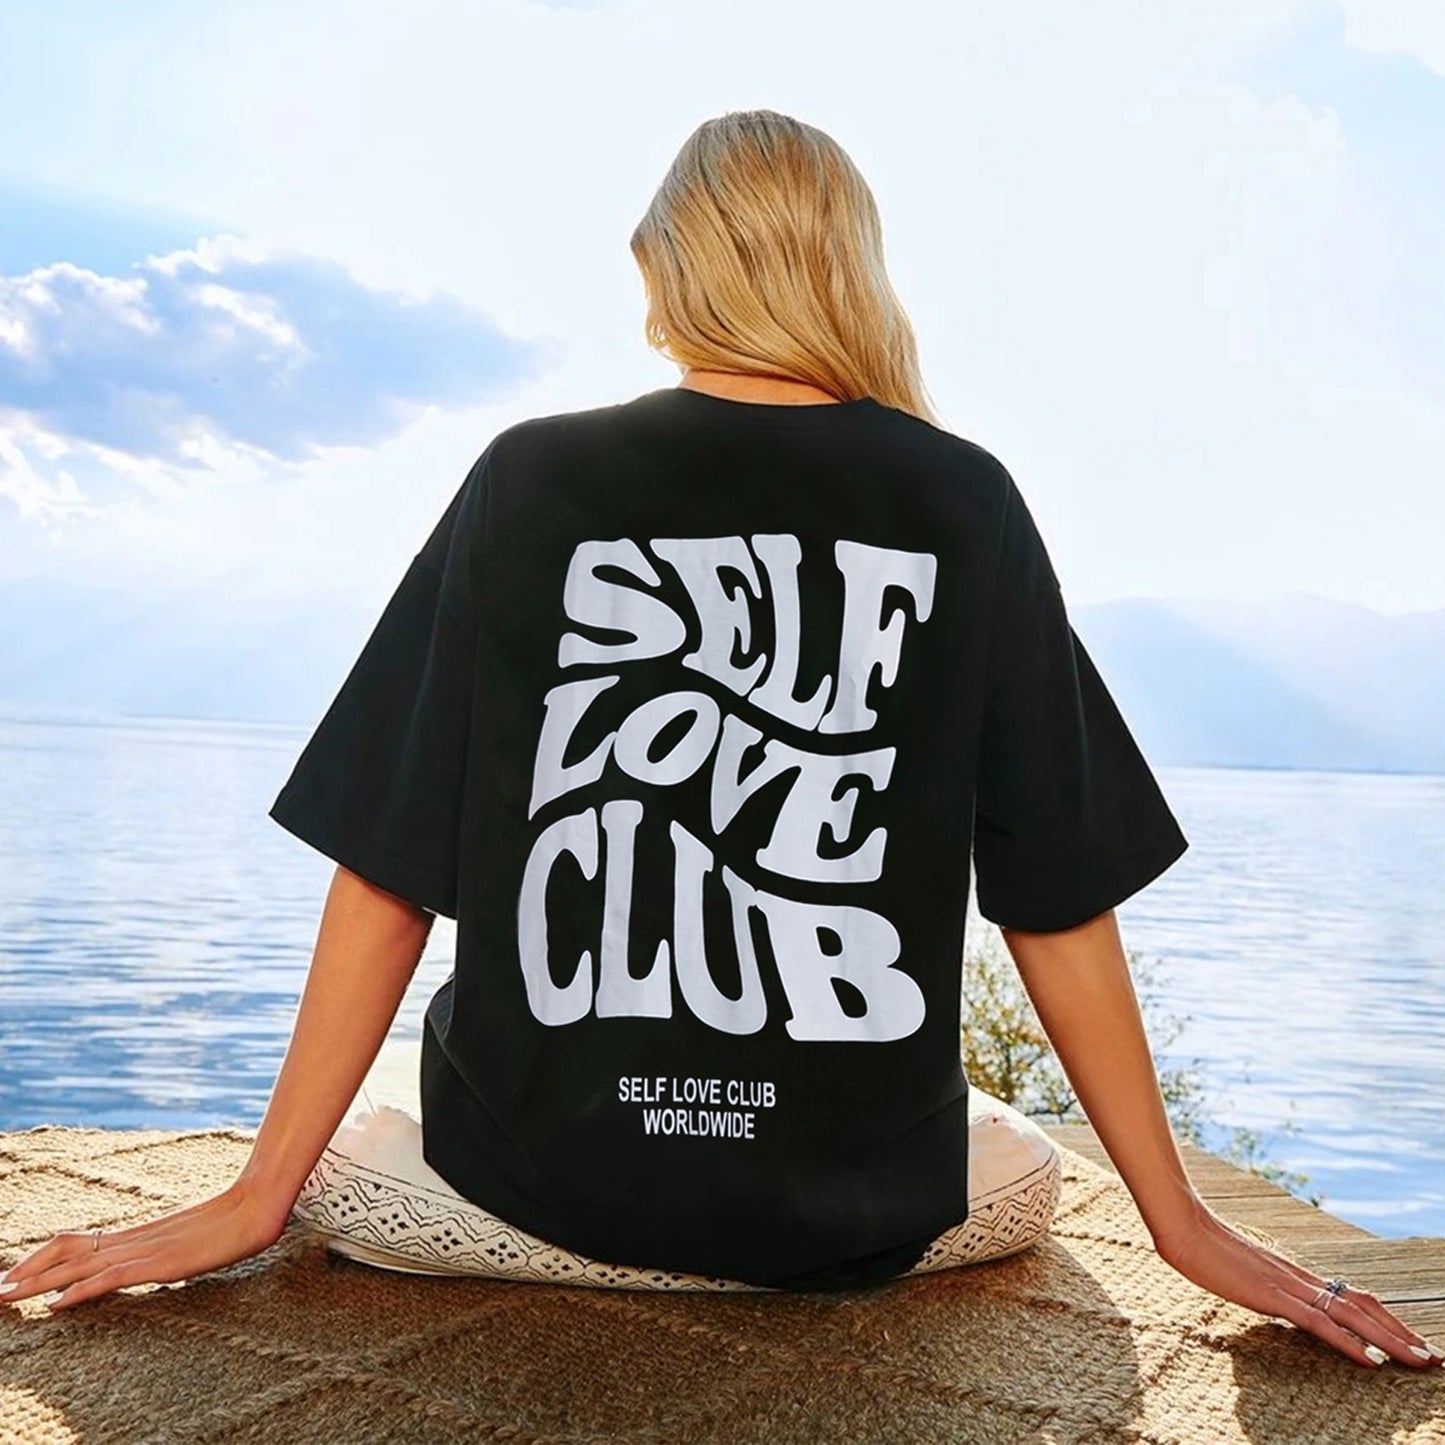 Camiseta del club del amor propio